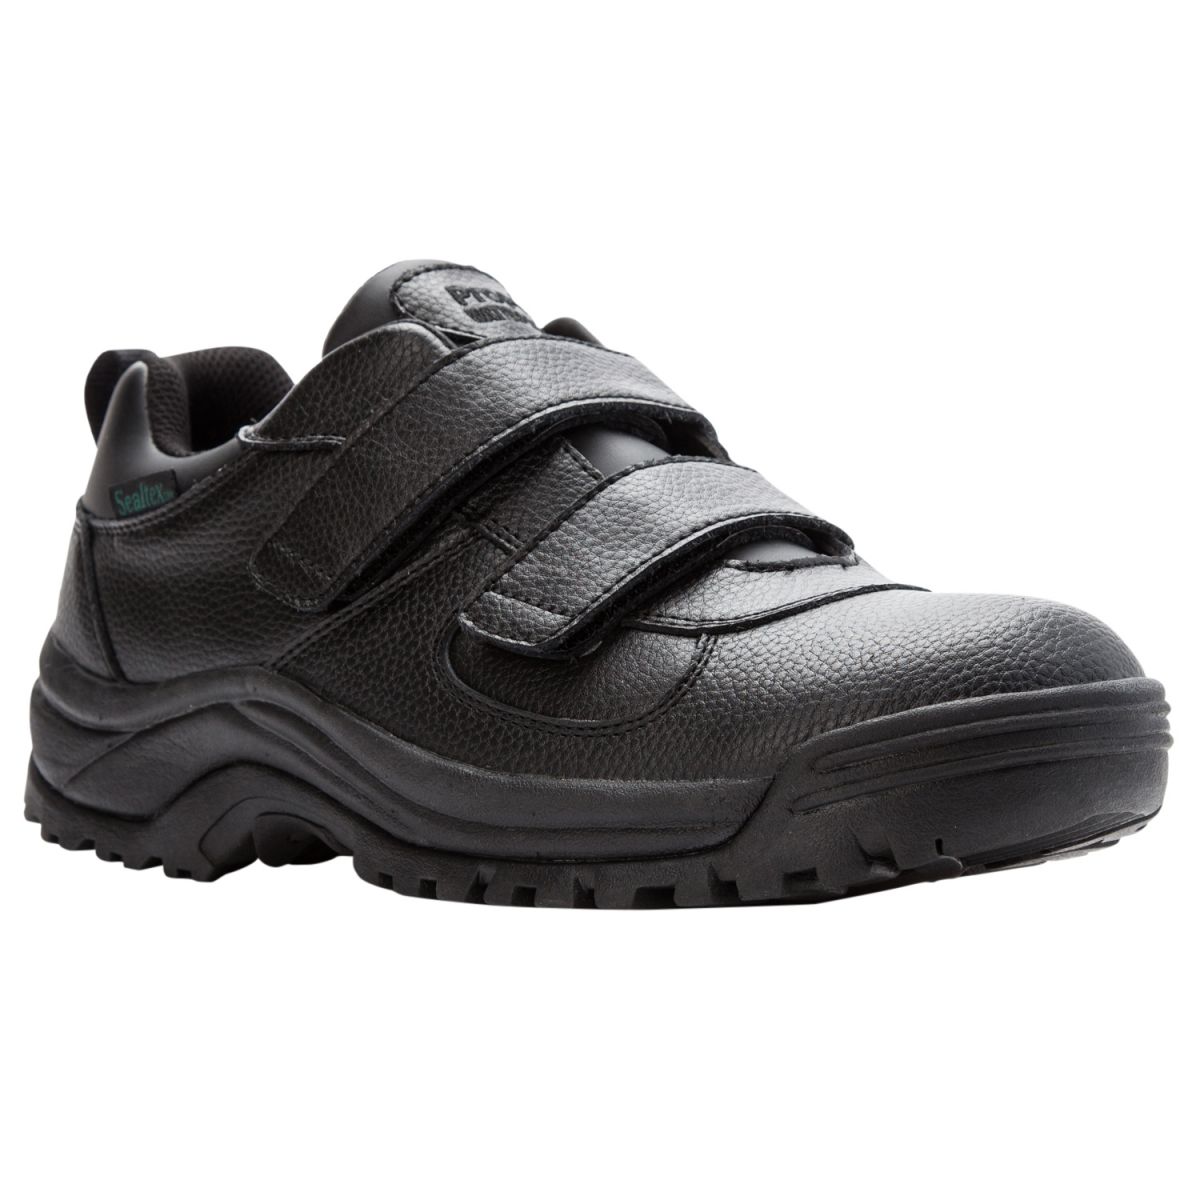 Propet Men's Cliff Walker Low Strap Waterproof Walking Shoe Black Leather - MBA023LBLK - image 1 of 6